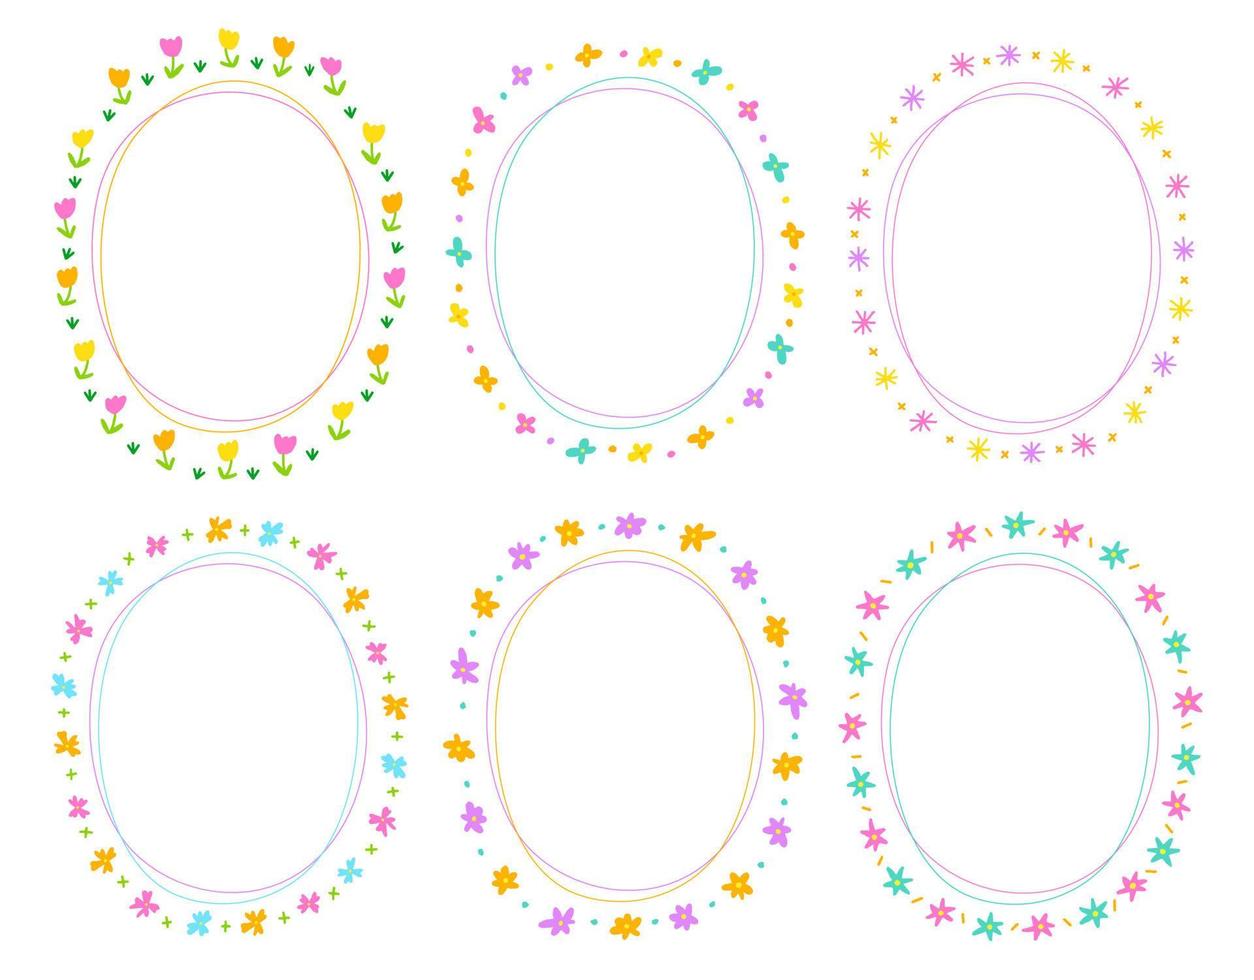 söt abstrakt tusensköna blomma cirkel oval doodle fri hand ritning ritad linje ramar ramar krans tallrik uppsättning samling platt stil regnbåge färgglad bakgrund vektor illustration pack